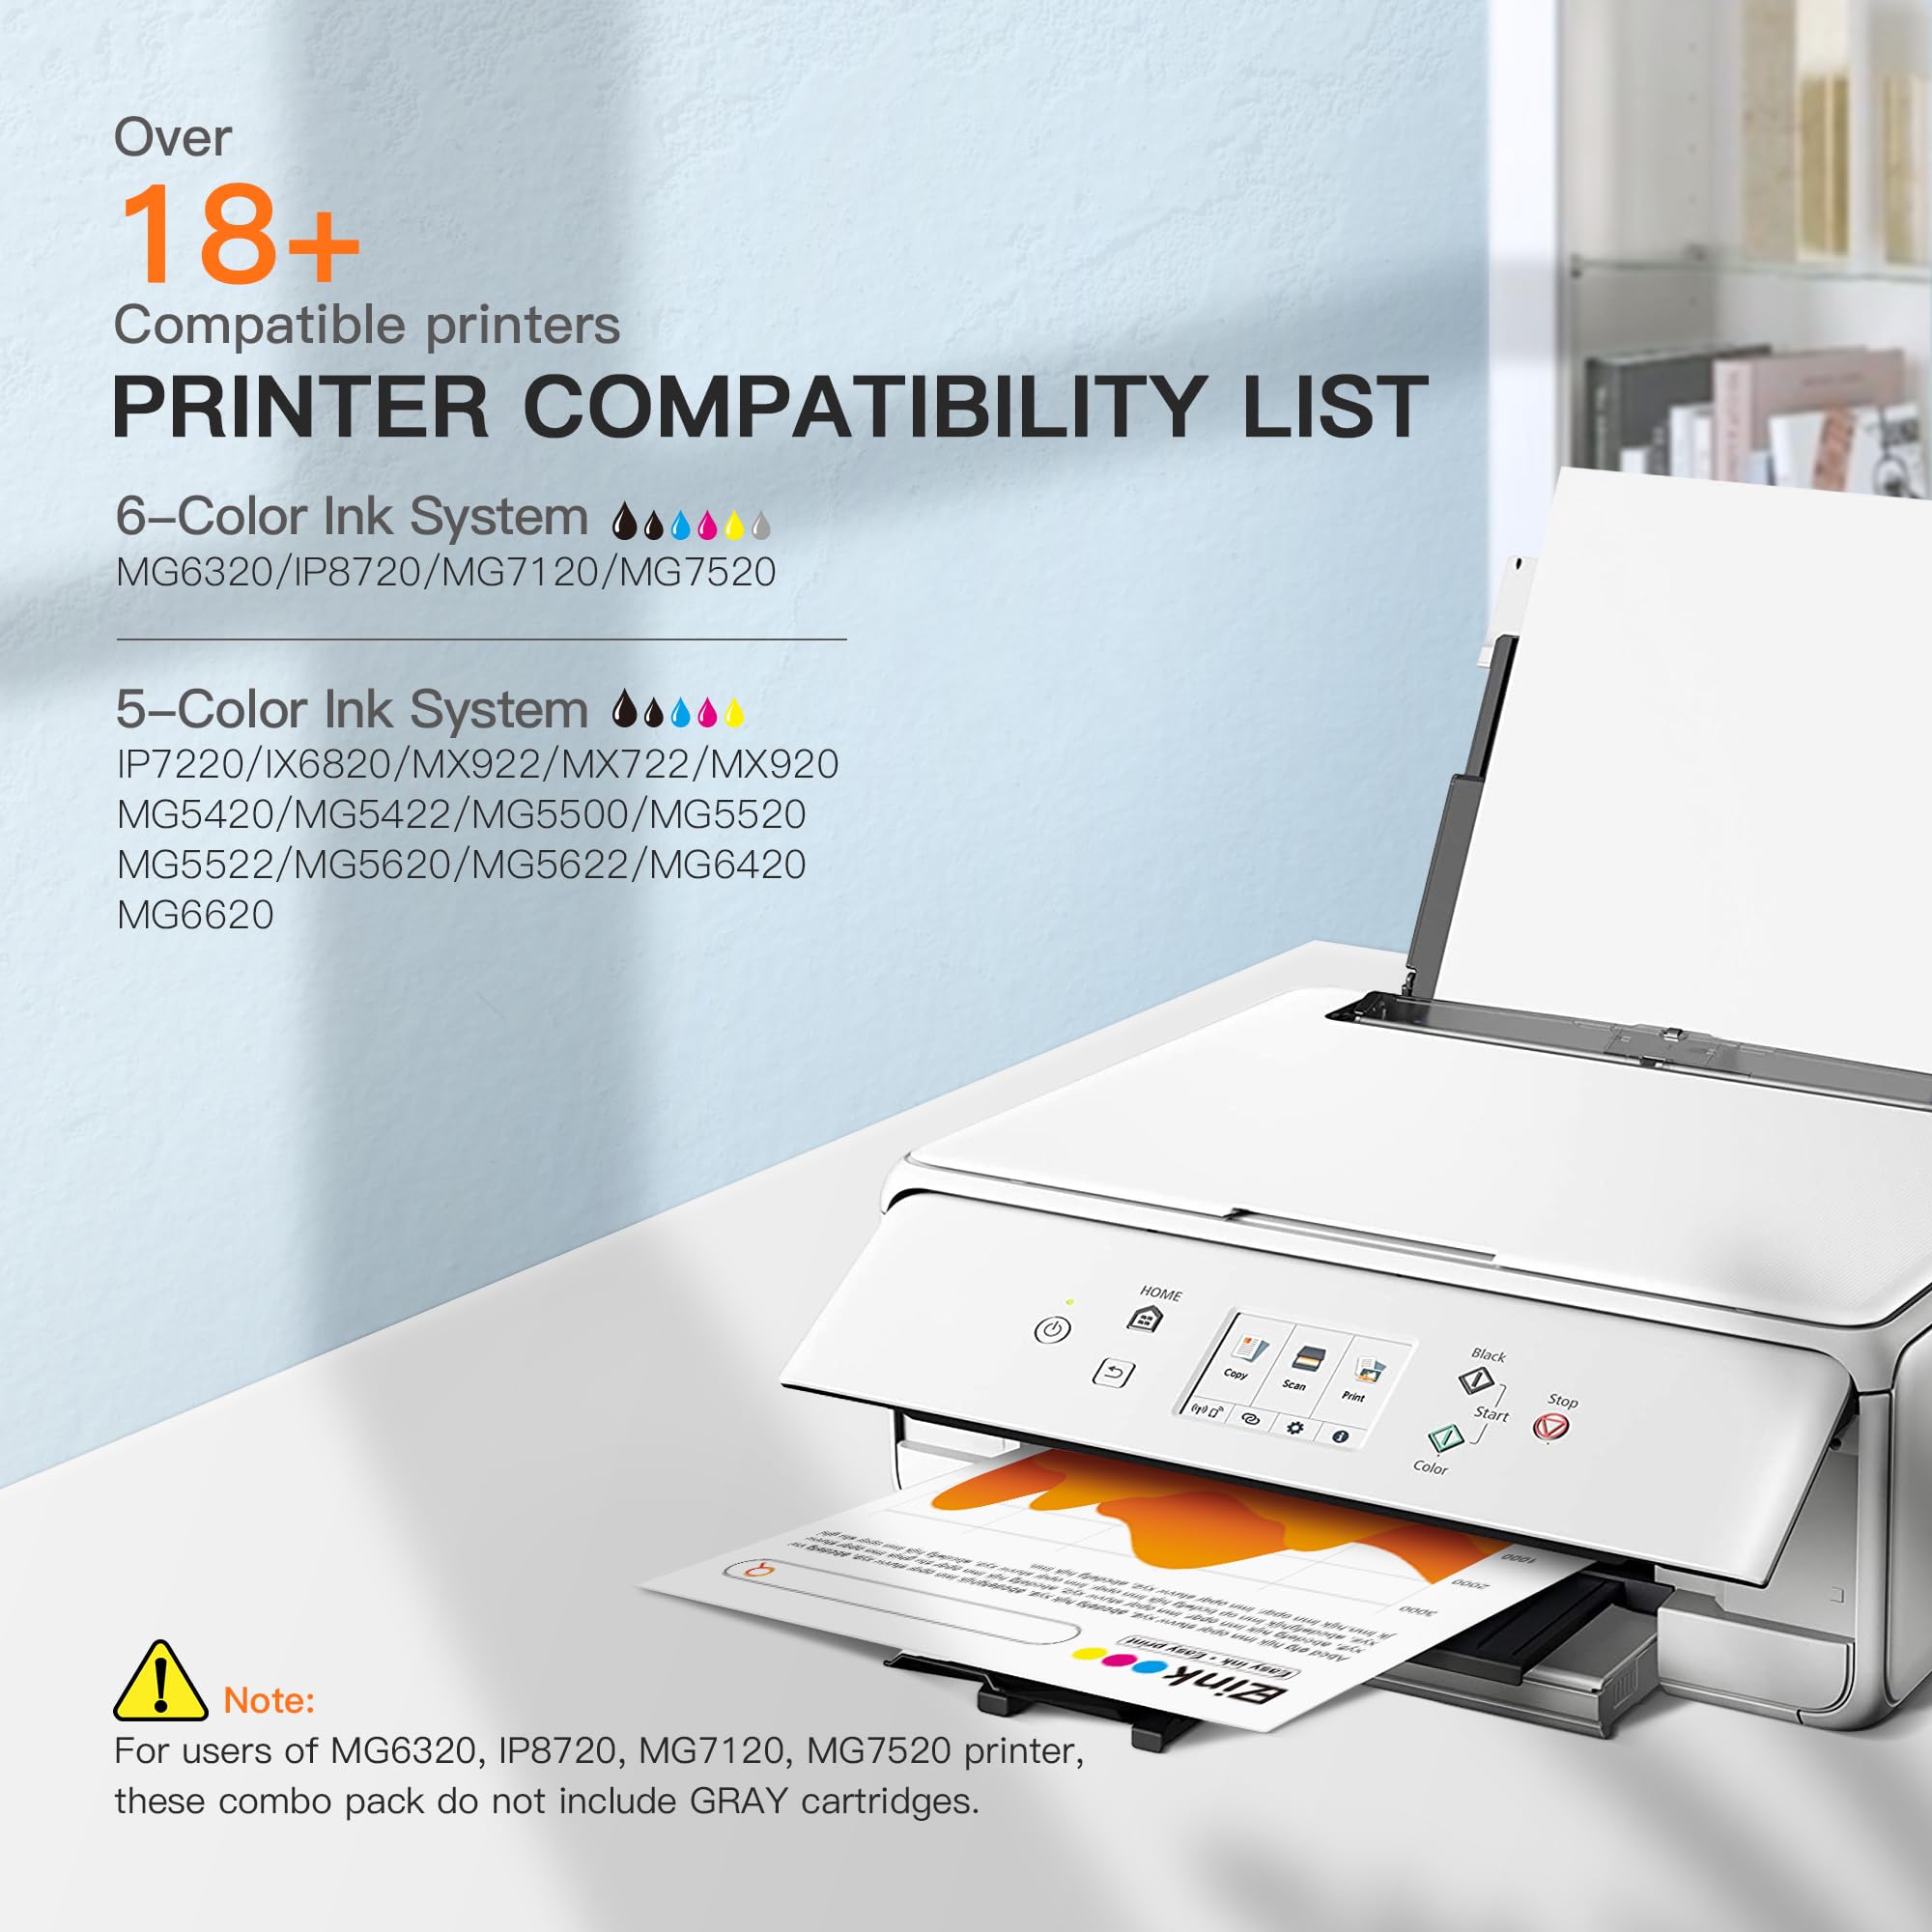 Printer compatibility checklist